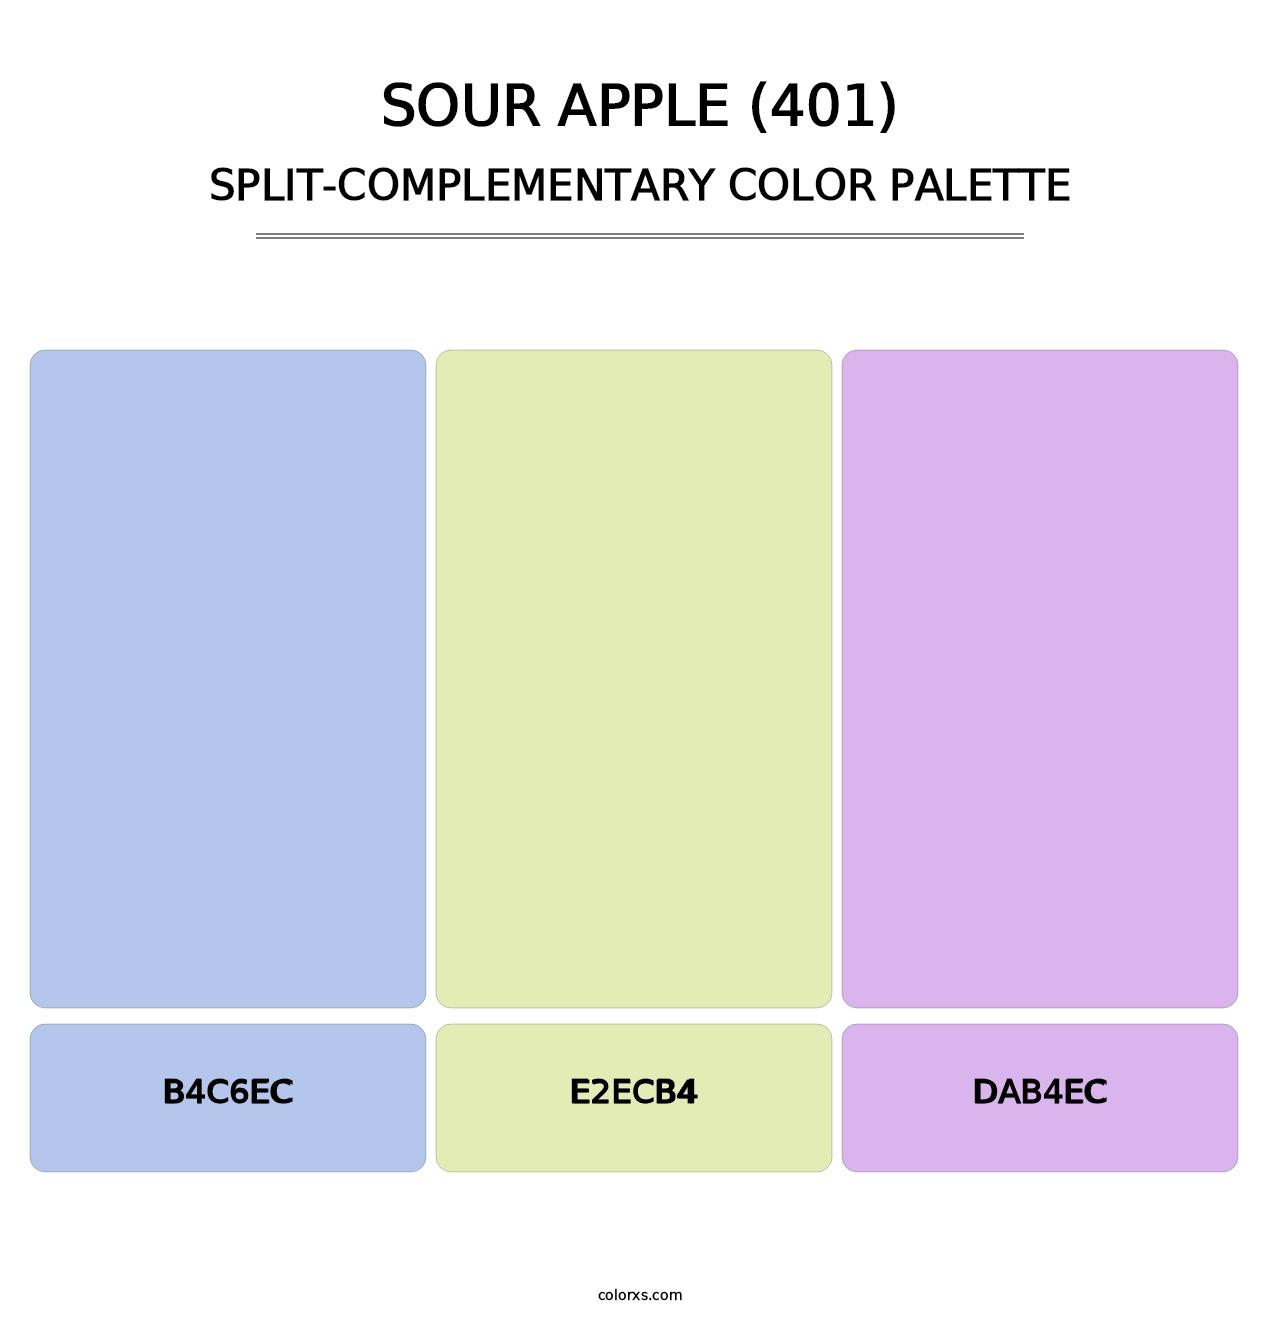 Sour Apple (401) - Split-Complementary Color Palette